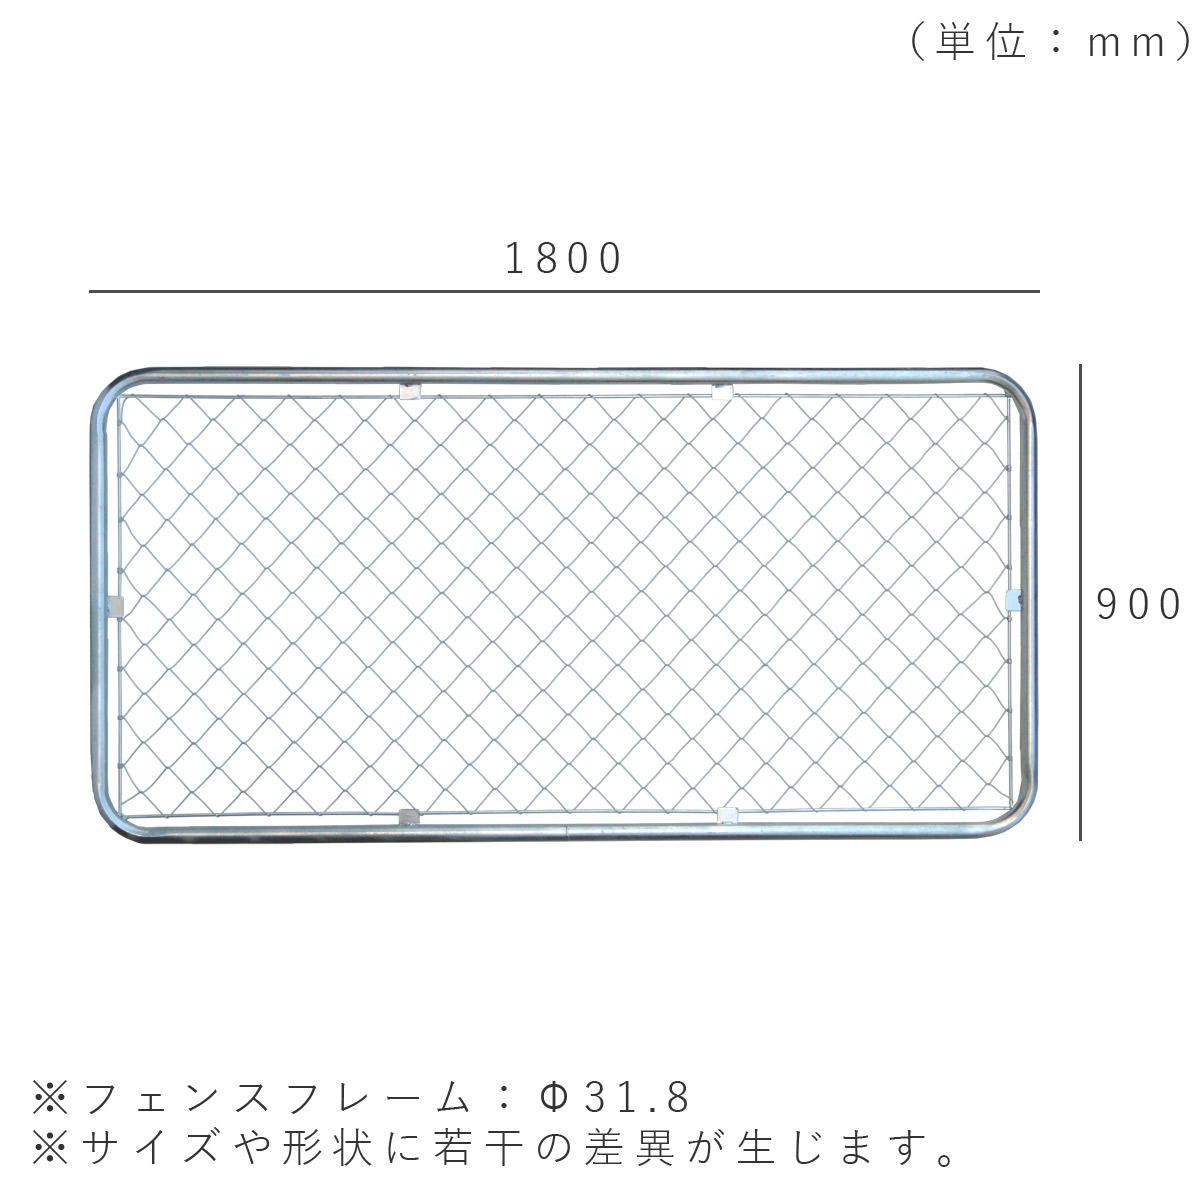 フェンスを設置した際の寸法図。1800×900mm、フェンスフレームはΦ31.8mm。サイズや形状に若干の差異が生じます。